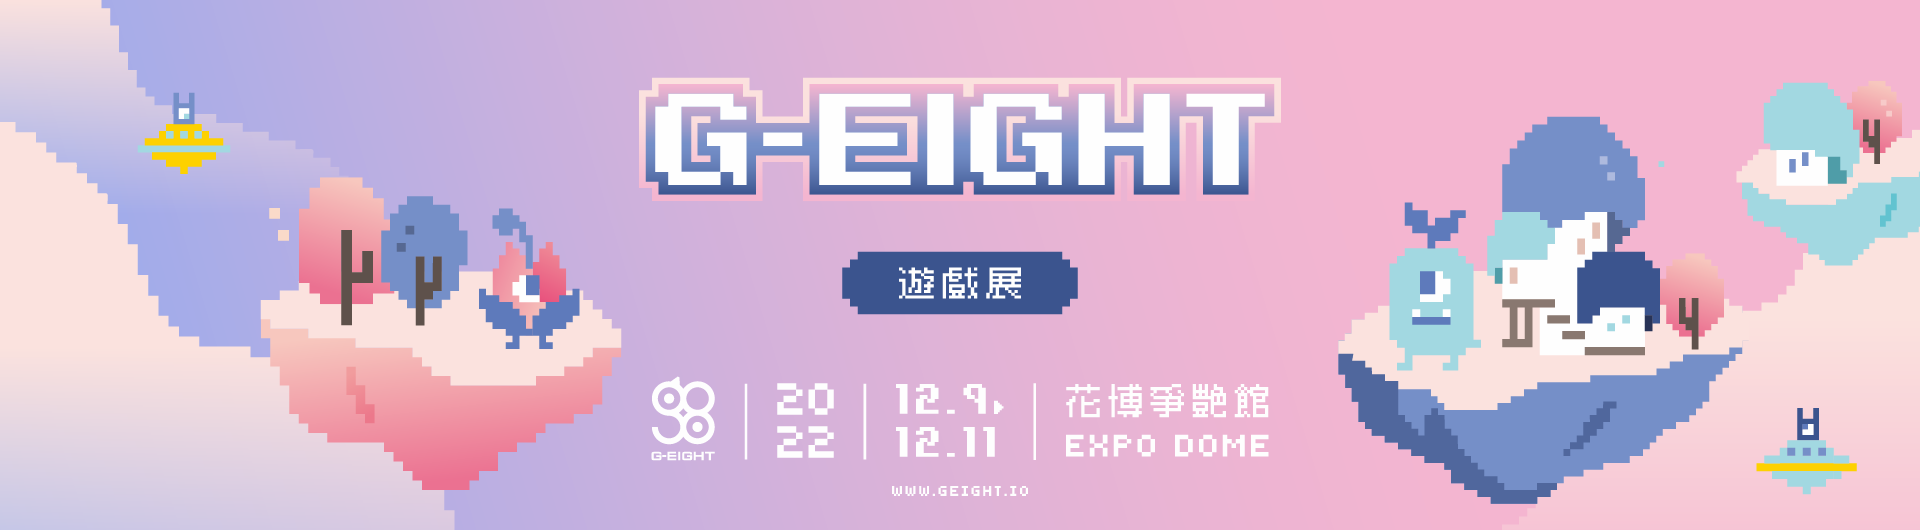 G-EIGHT電玩展